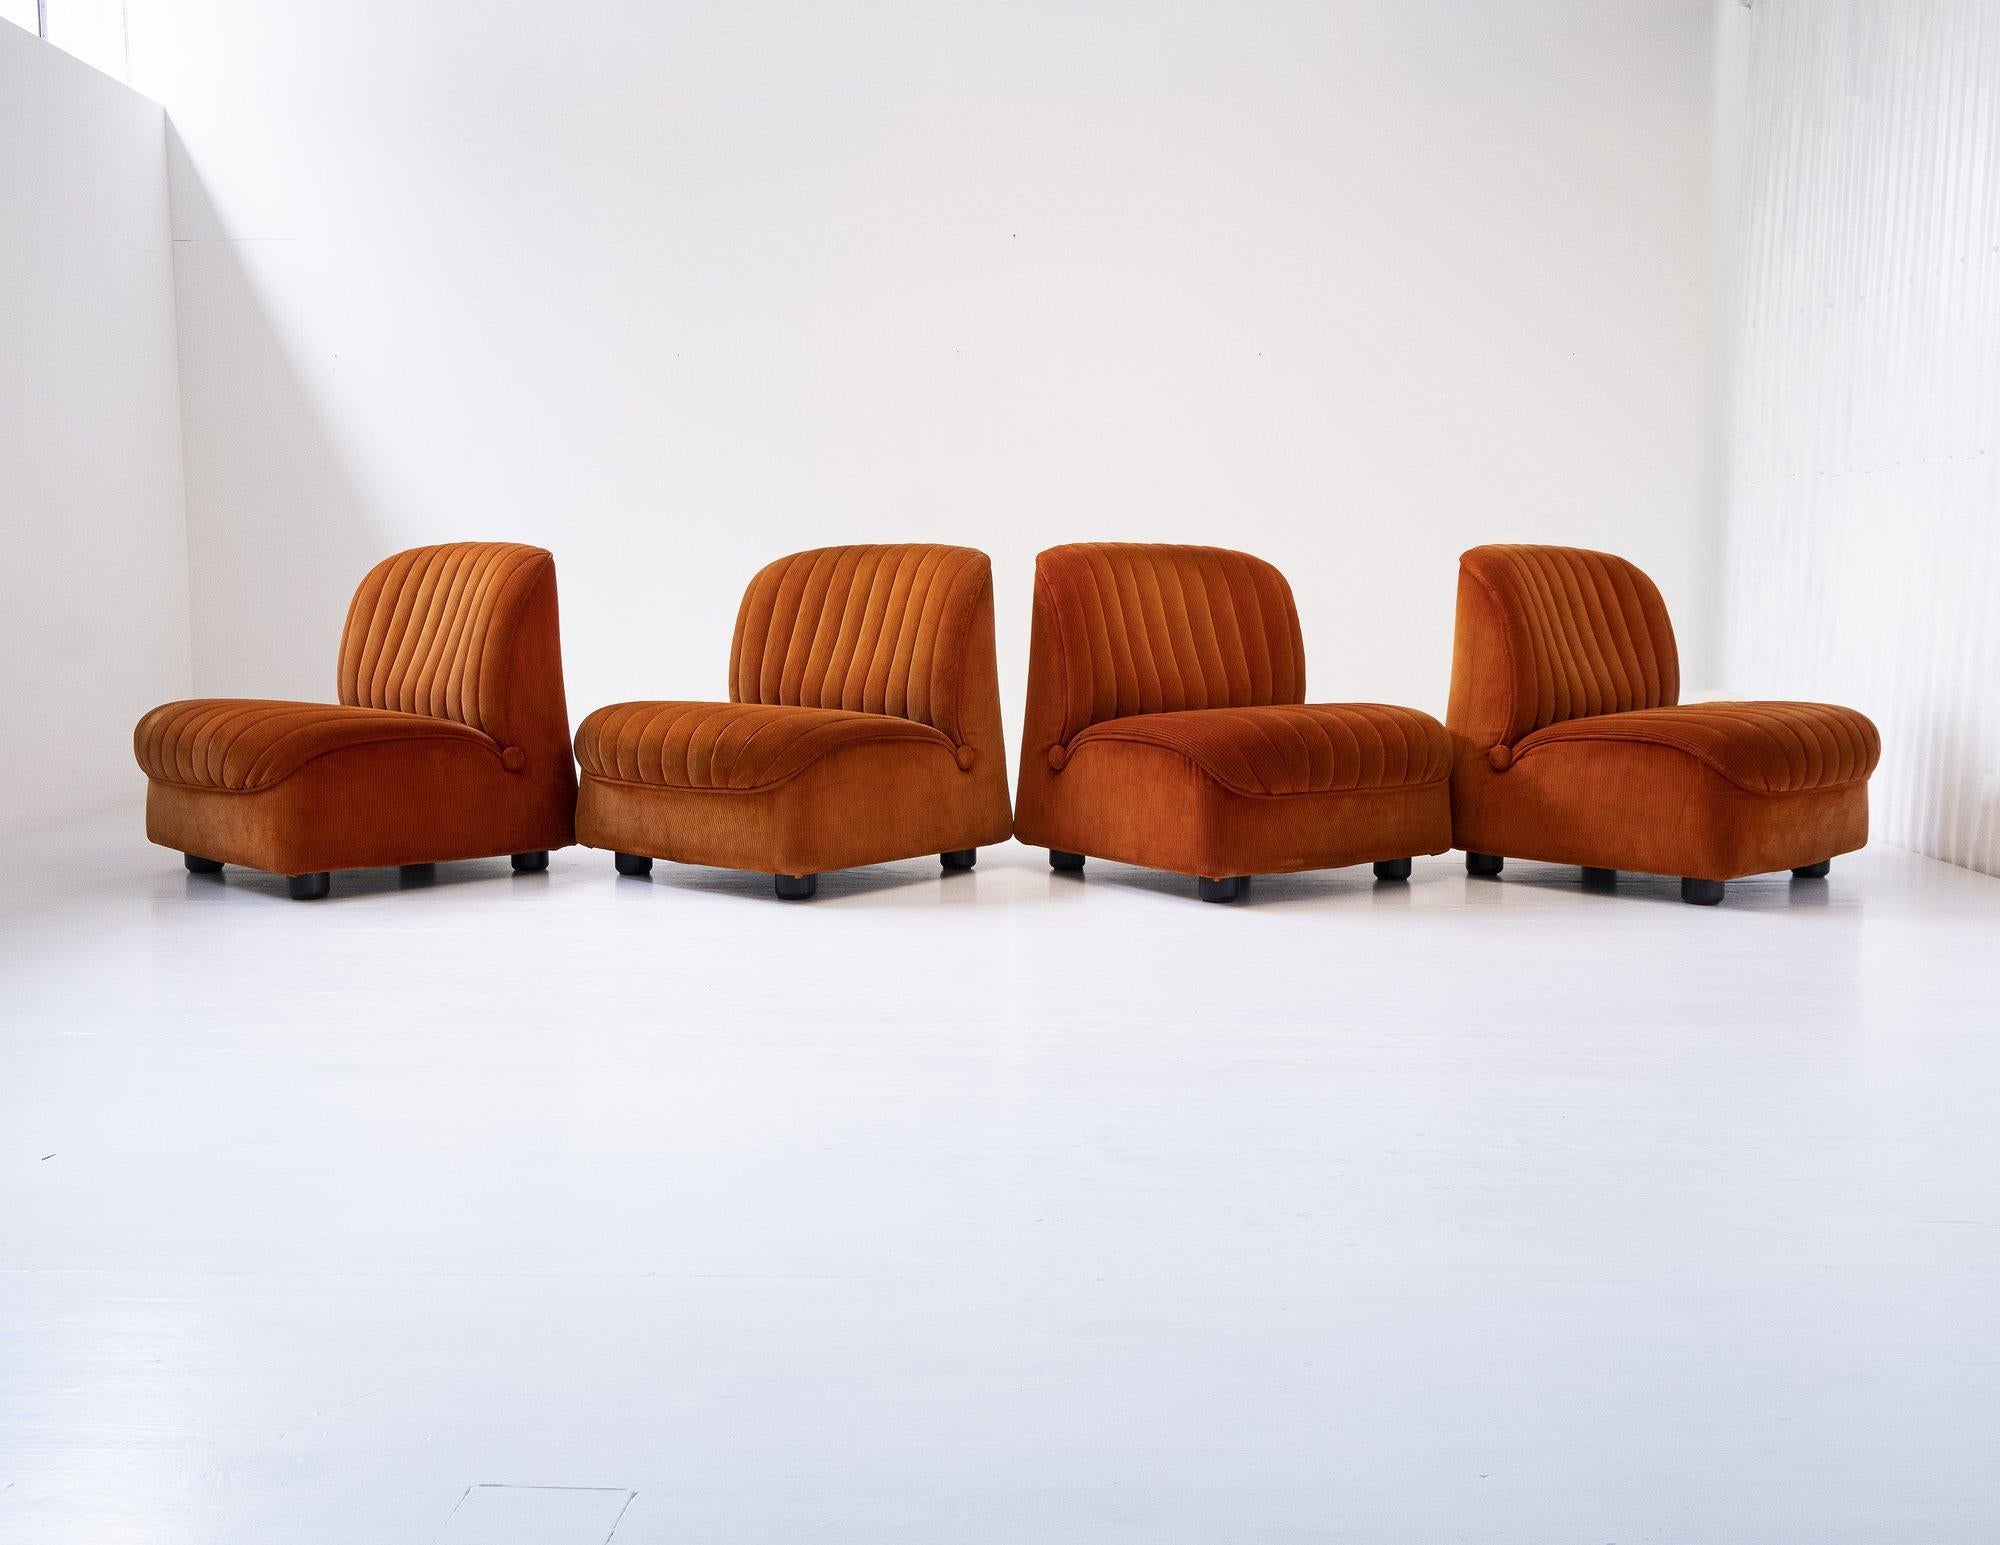 Schönes und schickes Set von 4 Ciprea Sesseln von den legendären Afra und Tobia Scarpa für Cassina. Hergestellt in Italien im Jahr 1968, bezogen mit originalem orangefarbenem Samt. Als Vorgänger des Bambole-Sofas von Mario Bellini stehen diese